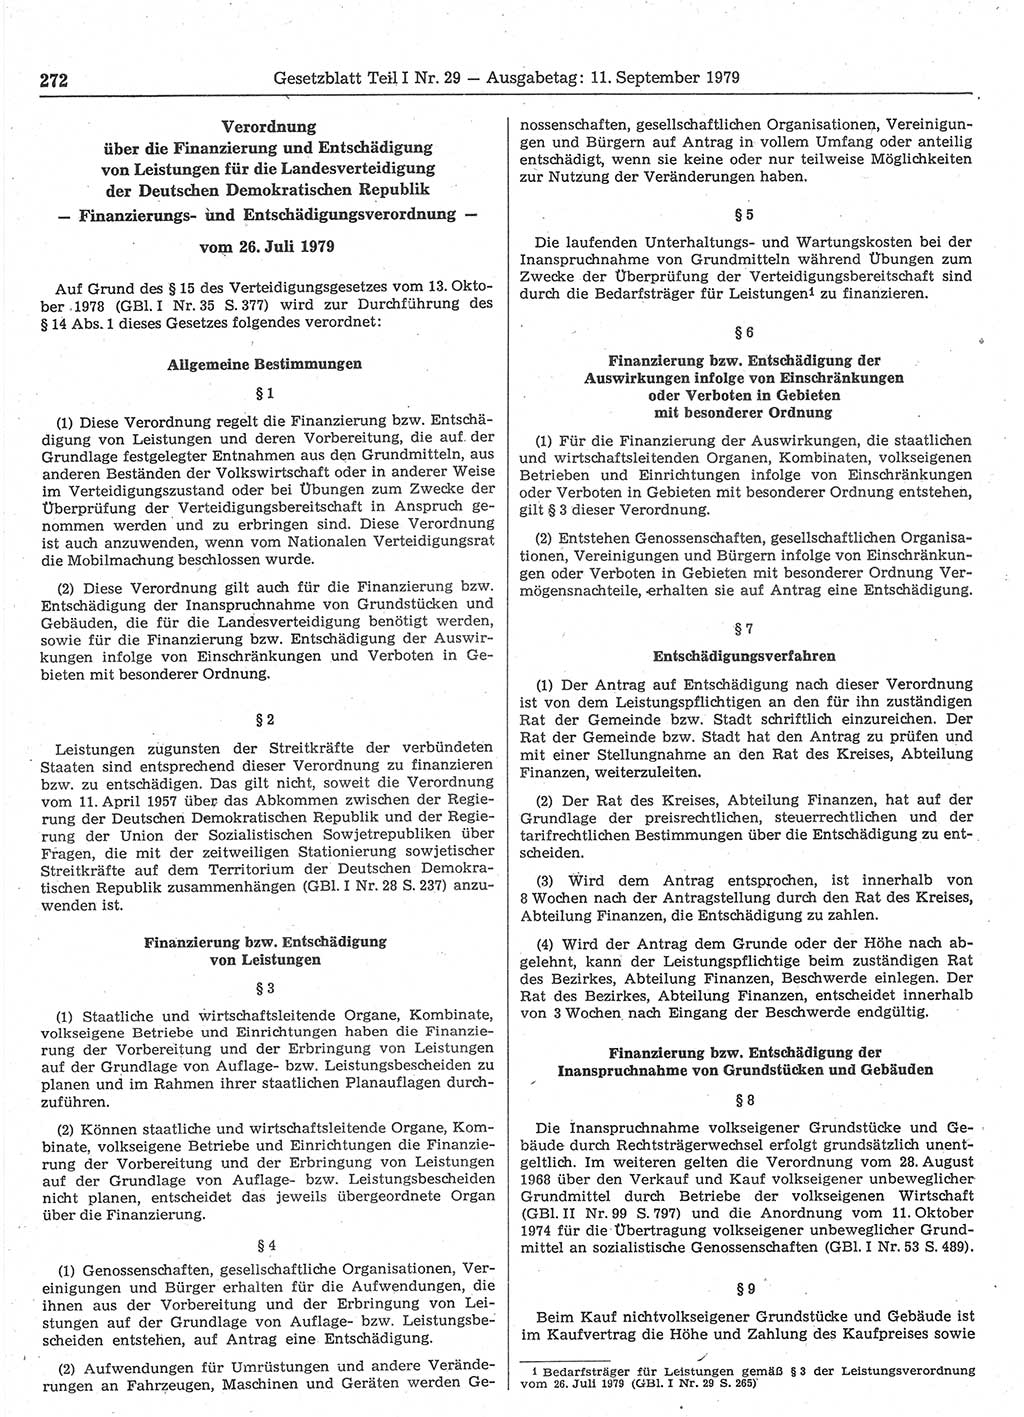 Gesetzblatt (GBl.) der Deutschen Demokratischen Republik (DDR) Teil Ⅰ 1979, Seite 272 (GBl. DDR Ⅰ 1979, S. 272)